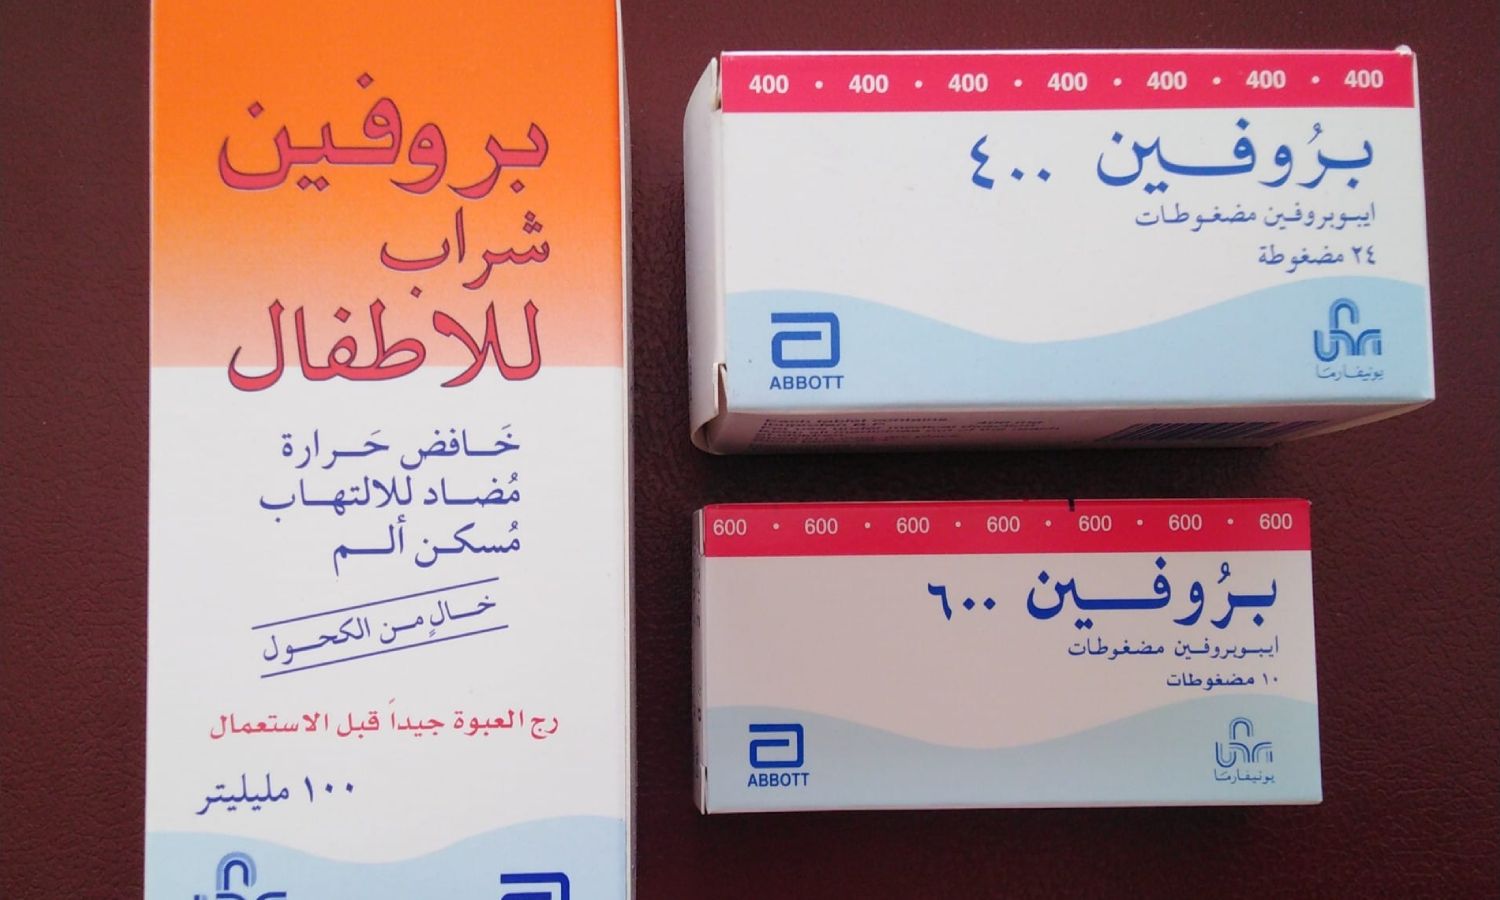 أشكال متعددة من دواء بروفين في سوريا (الصيدلانية منار العلي)